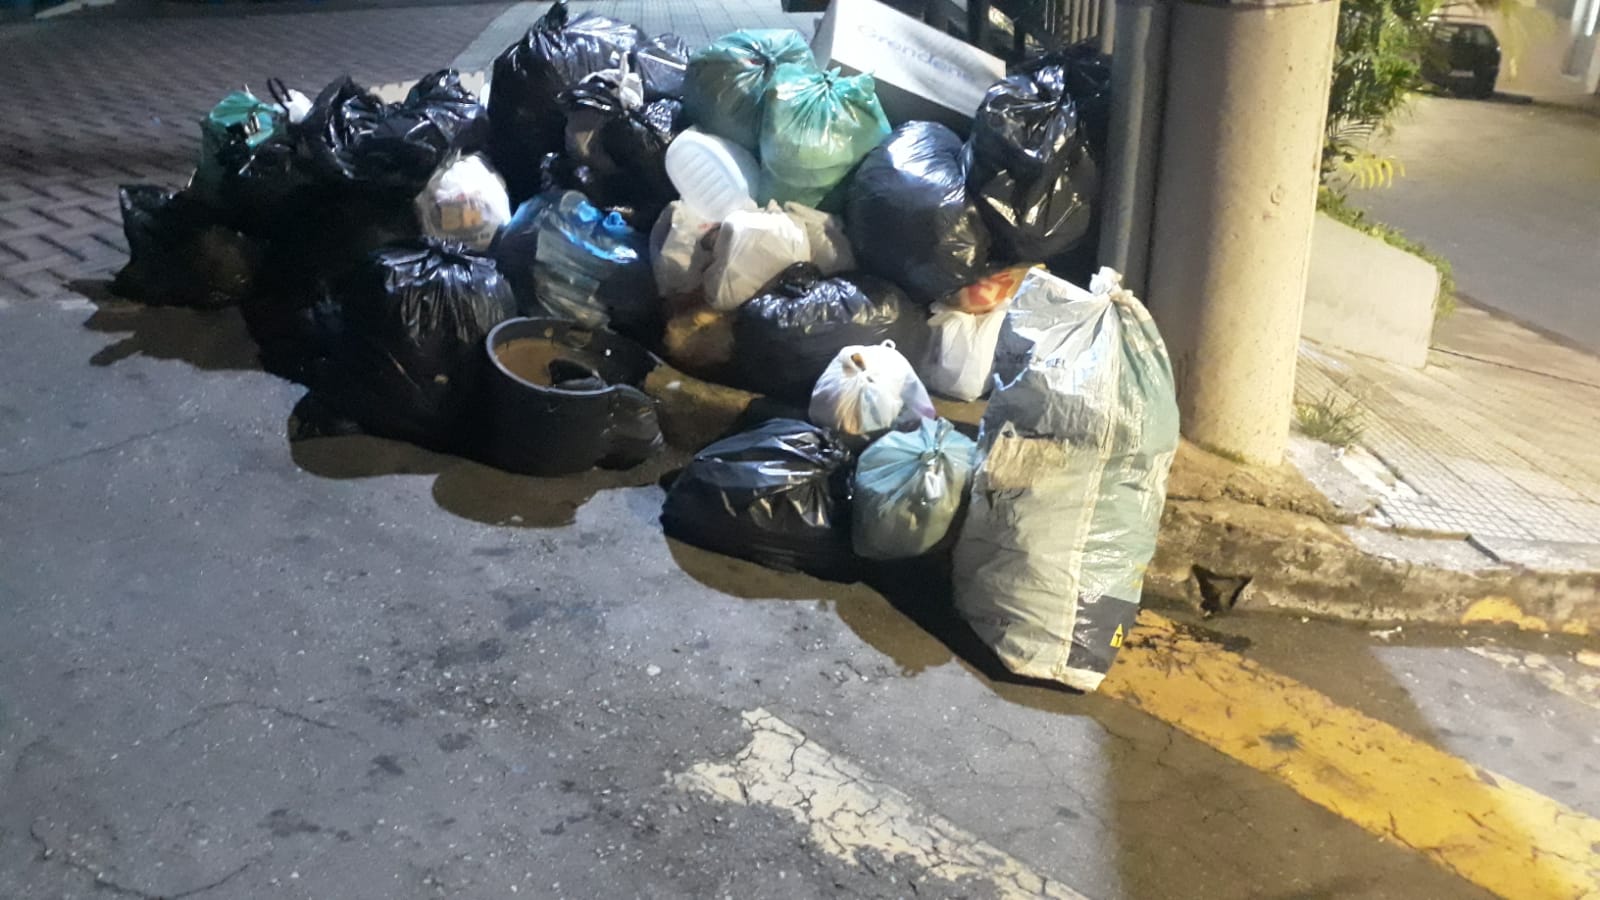 LAFAIETE SUJA: vereadores vão ao MPMG contra a má qualidade de serviço de limpeza urbana